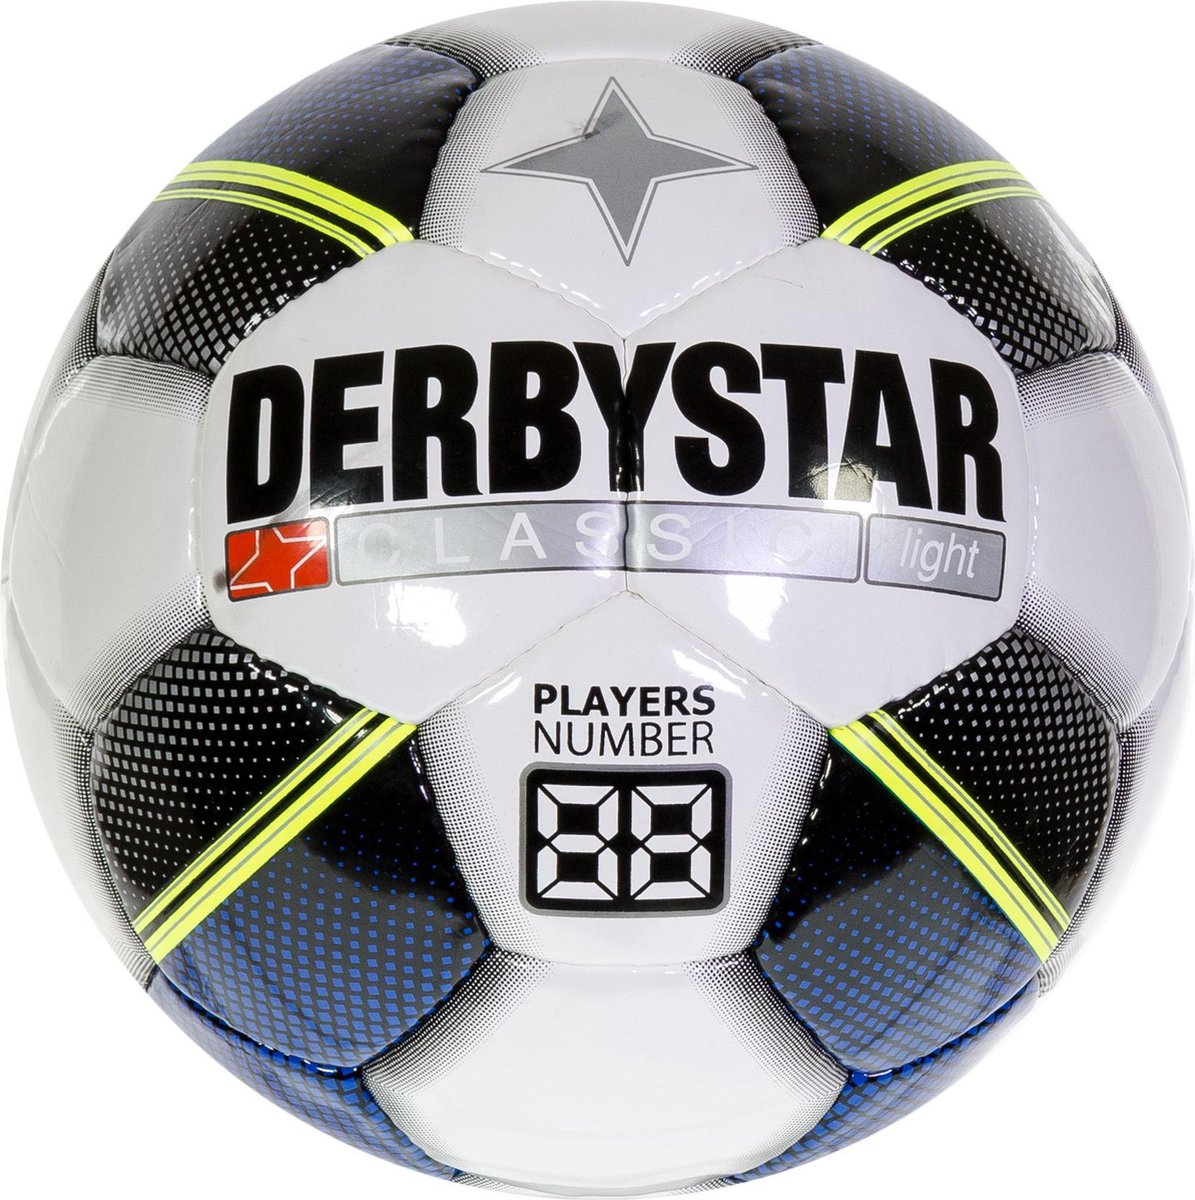 Derbystar Classic TT Light Voetbal - 3 vlaks - 5 | bol.com